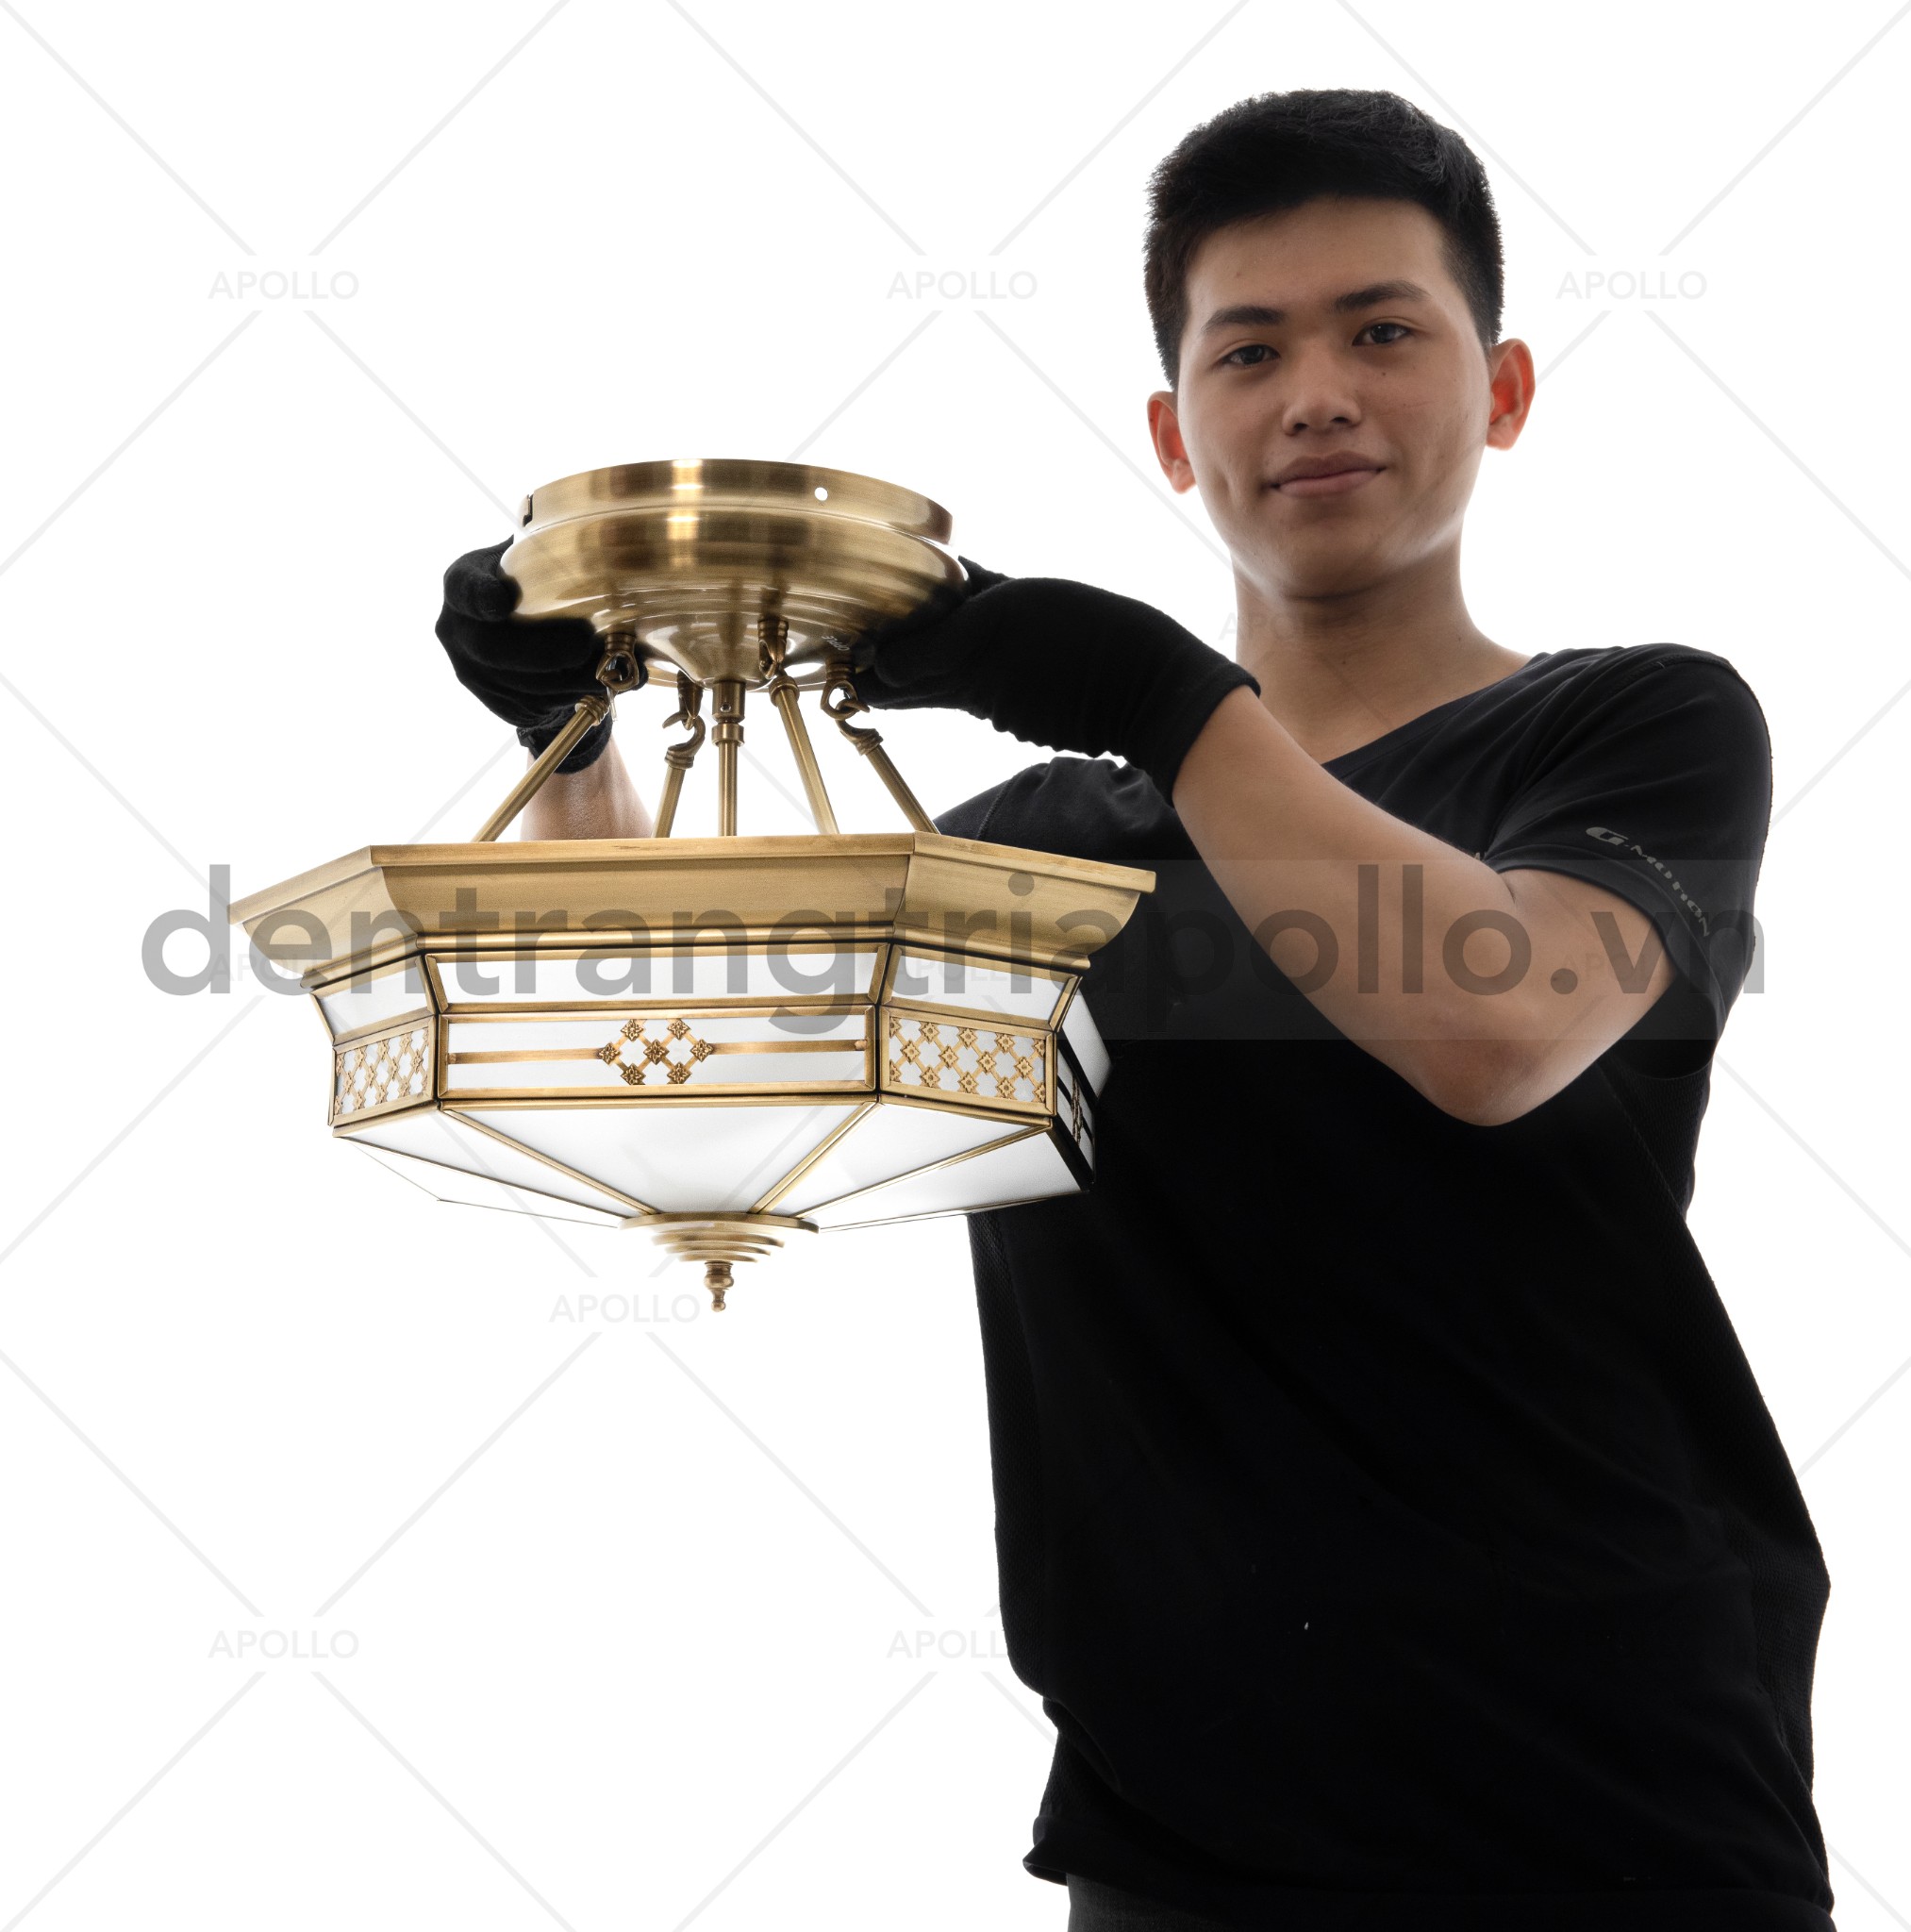 đèn treo trần đồng cổ điển